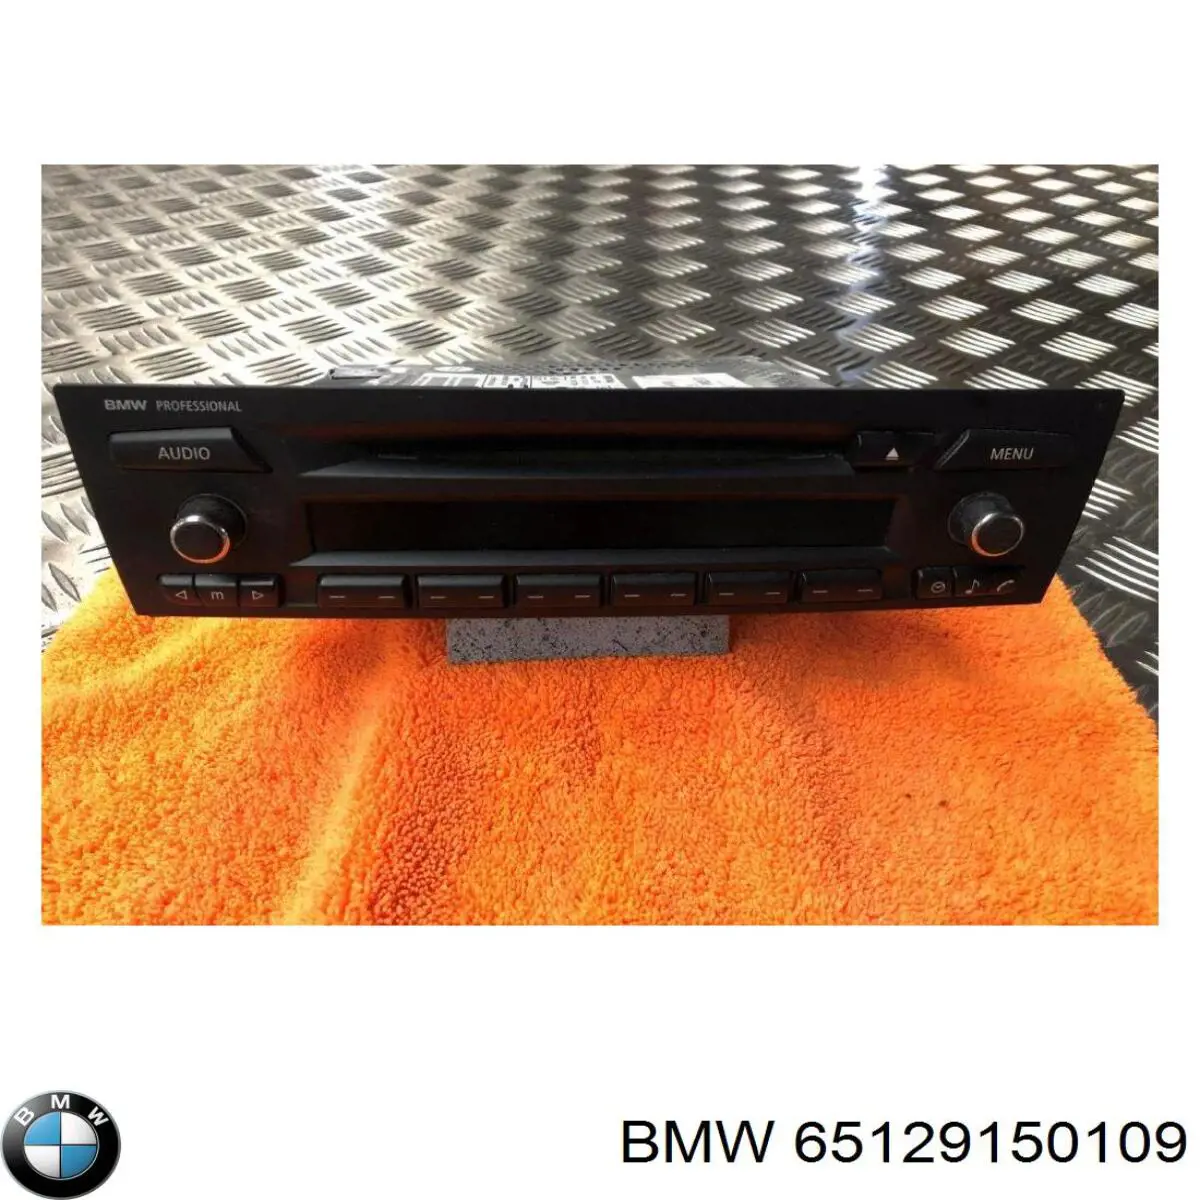 65126971703 BMW radio (radio am/fm)